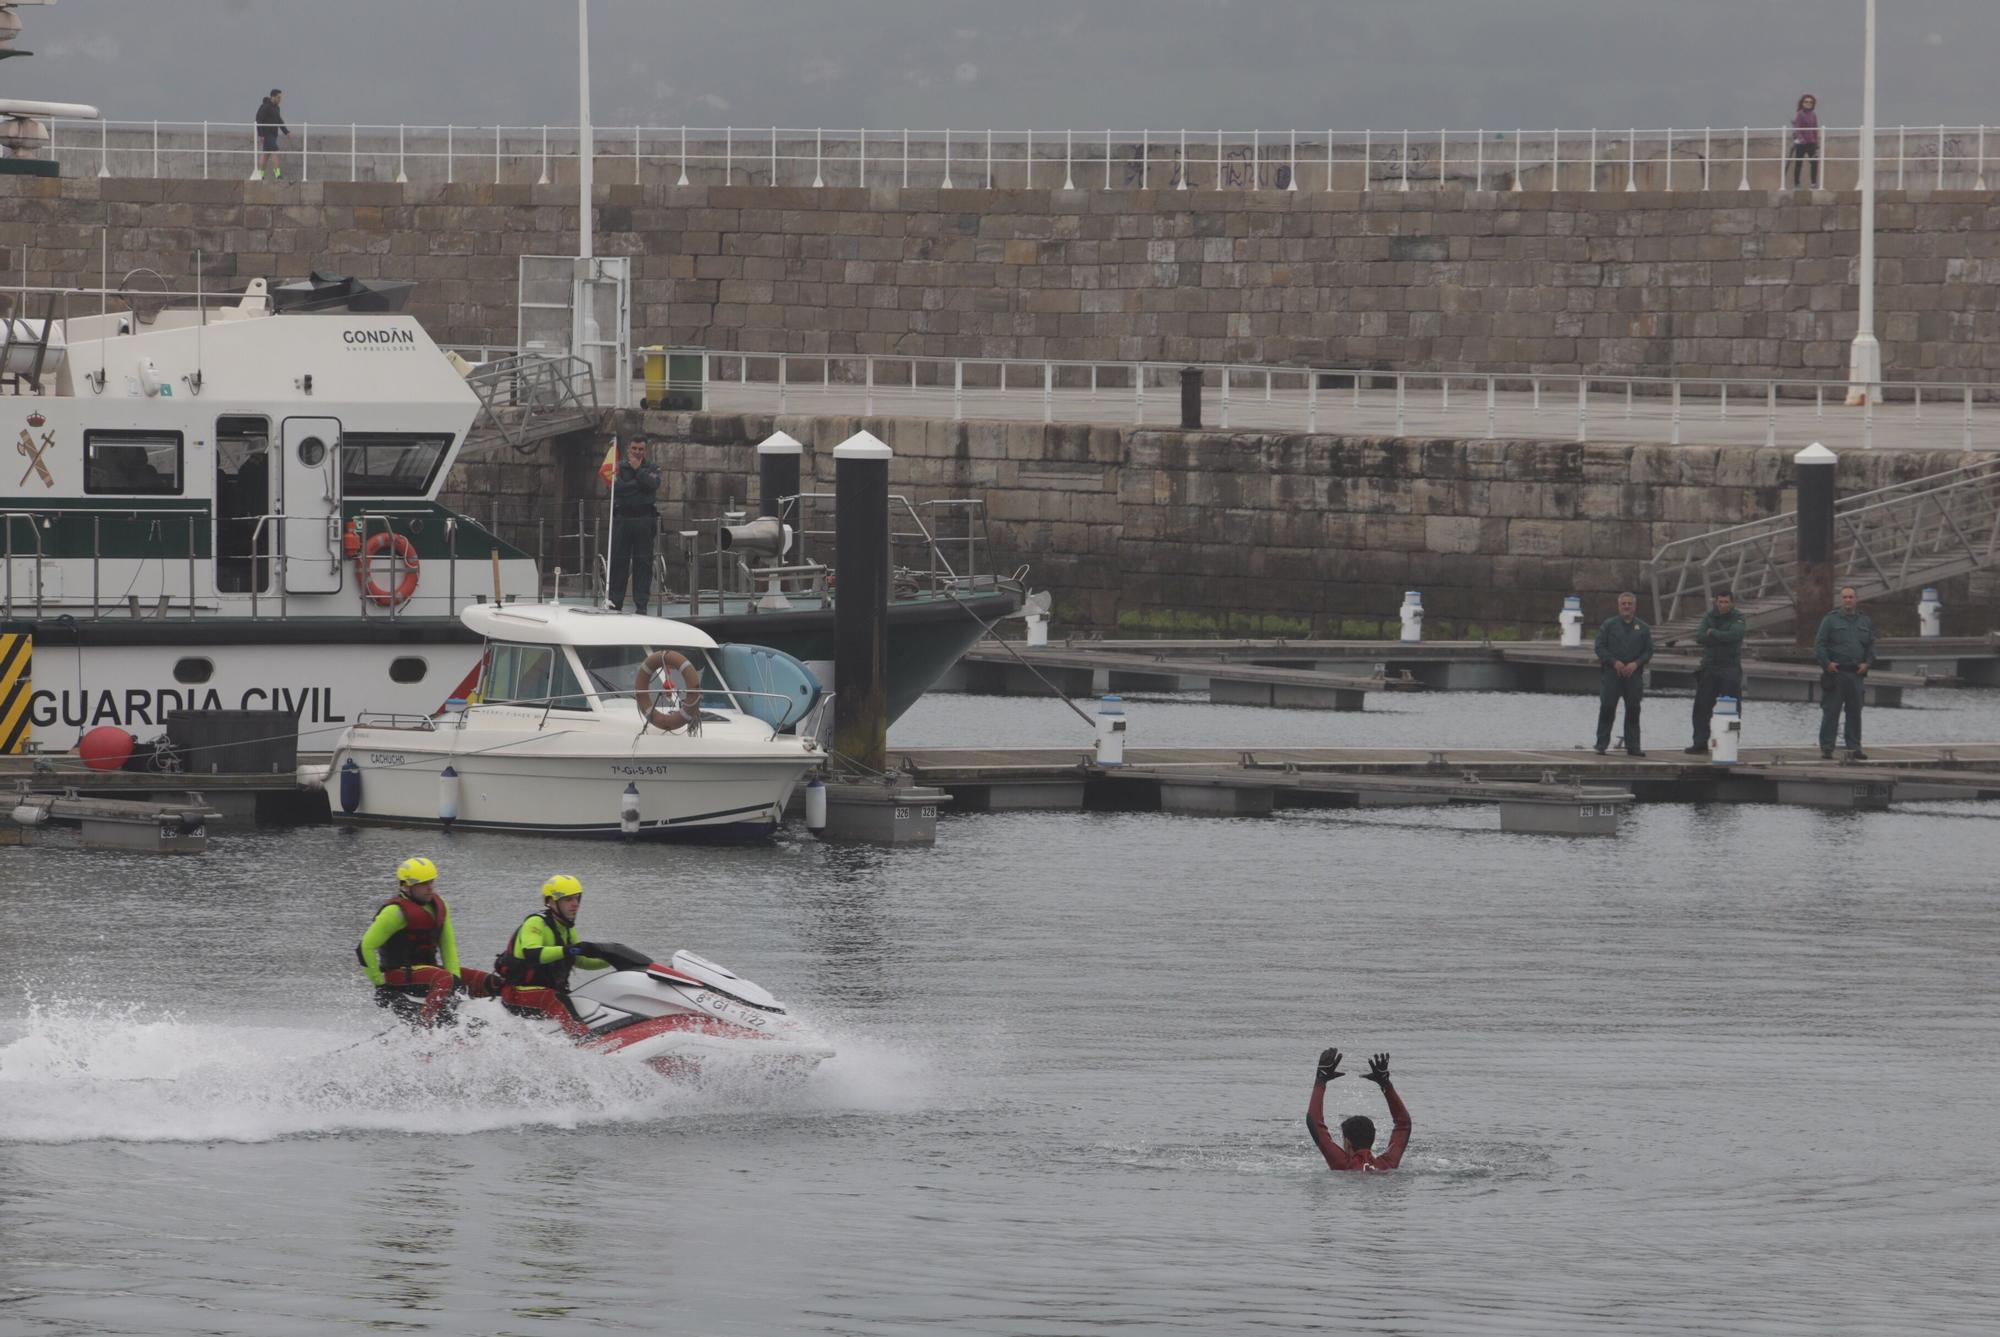 En imágenes: Jornada náutica con deporte y simulacro de rescate en el puerto deportivo de Gijón